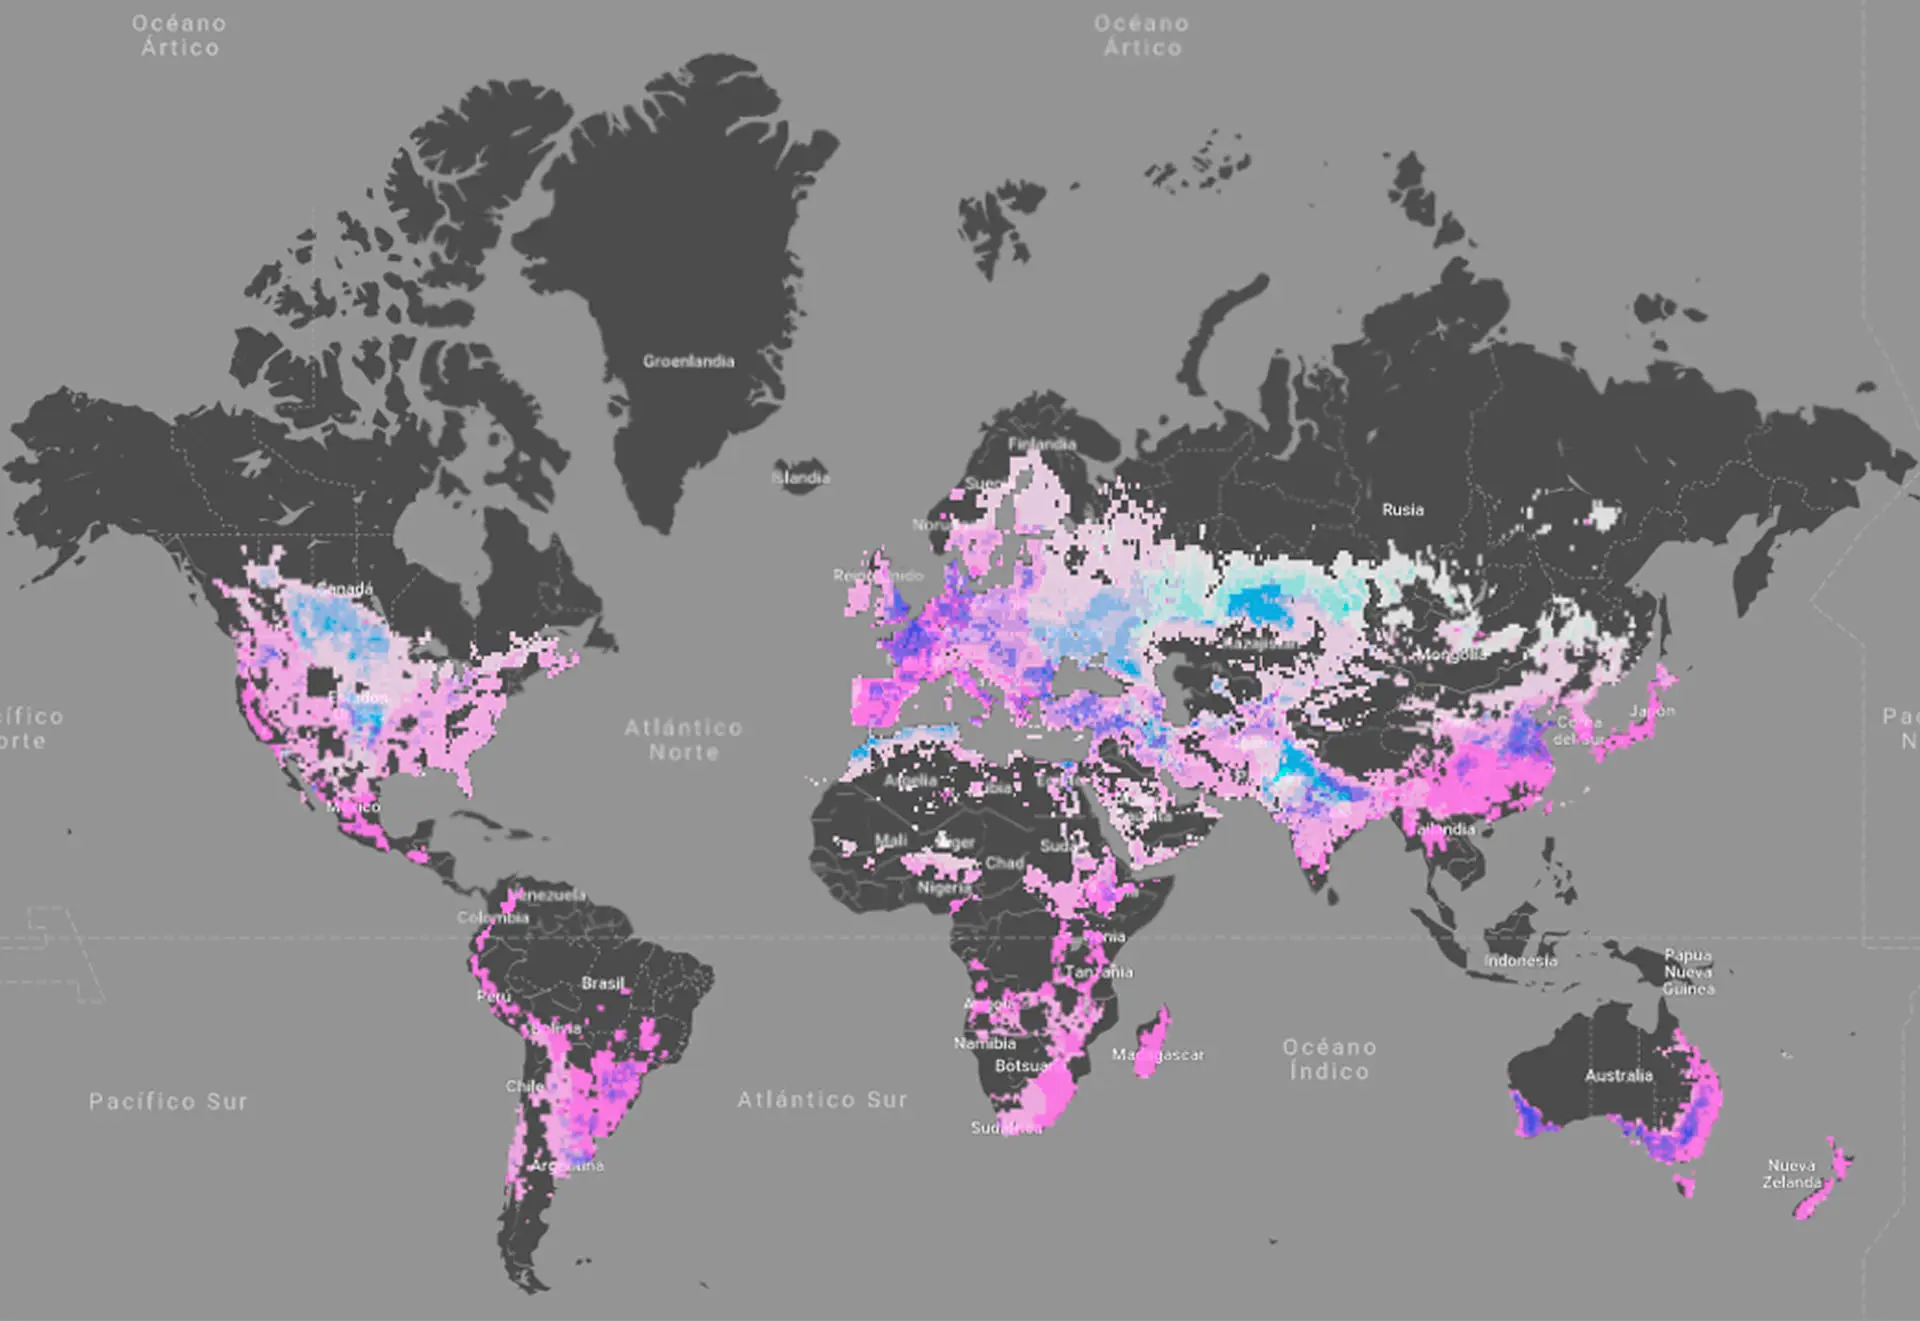 Un nuevo estudio dibuja el mapa del conflicto entre agricultura y biodiversidad en el mundo / Imagen: Spatial Footprint